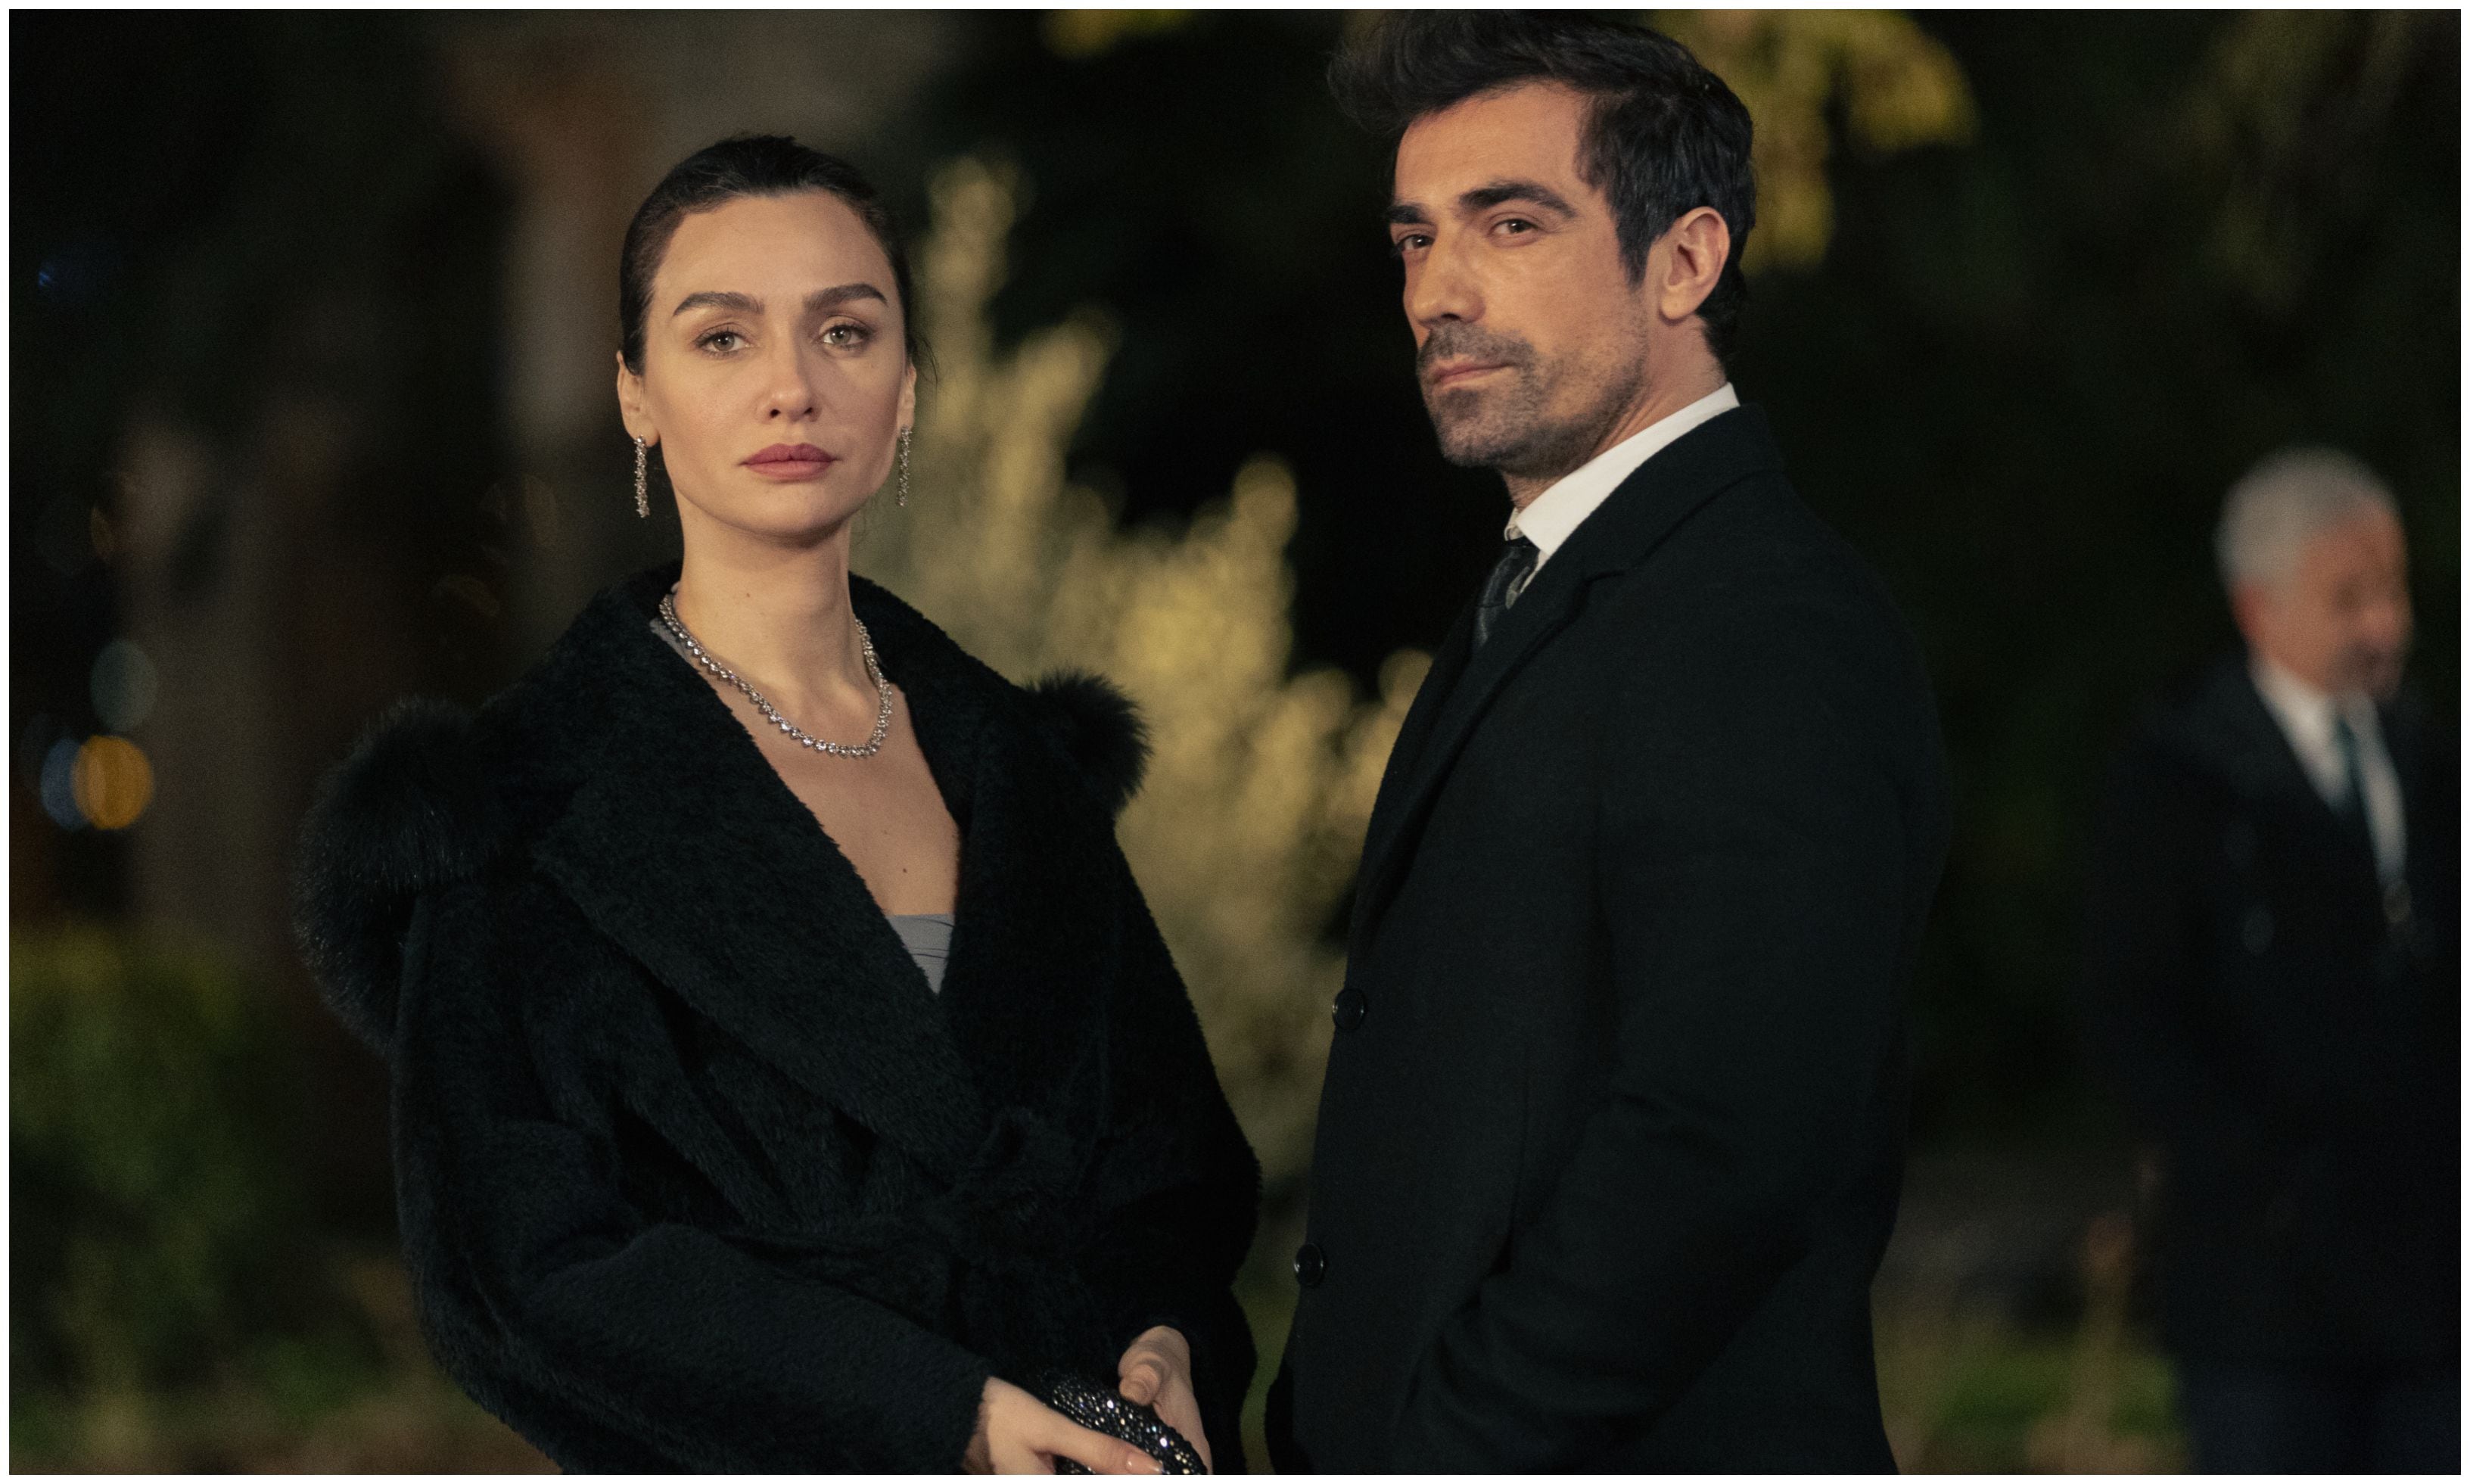 la serie turca más aclamada en netflix estrena nueva temporada con más intriga y misterio